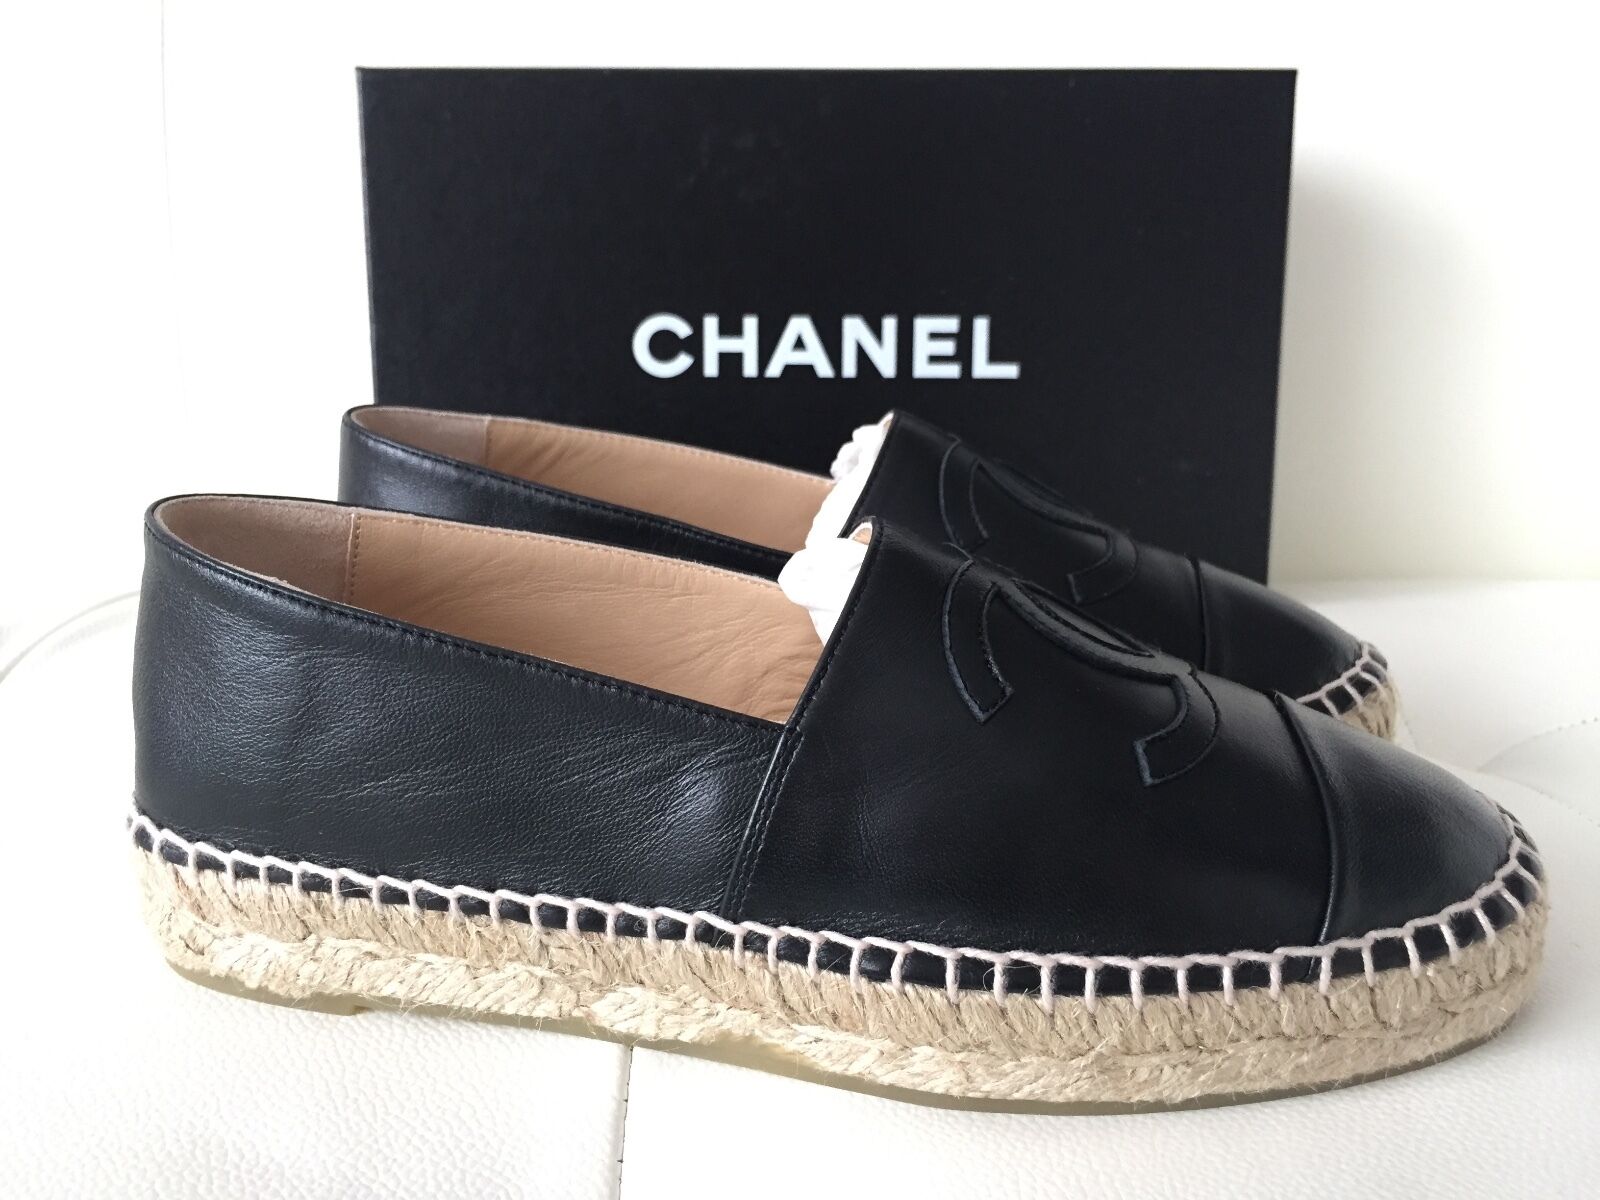 CHANEL, Shoes, Authentic Chanel Lambskin Cc Espadrilles Beige Black Size  36